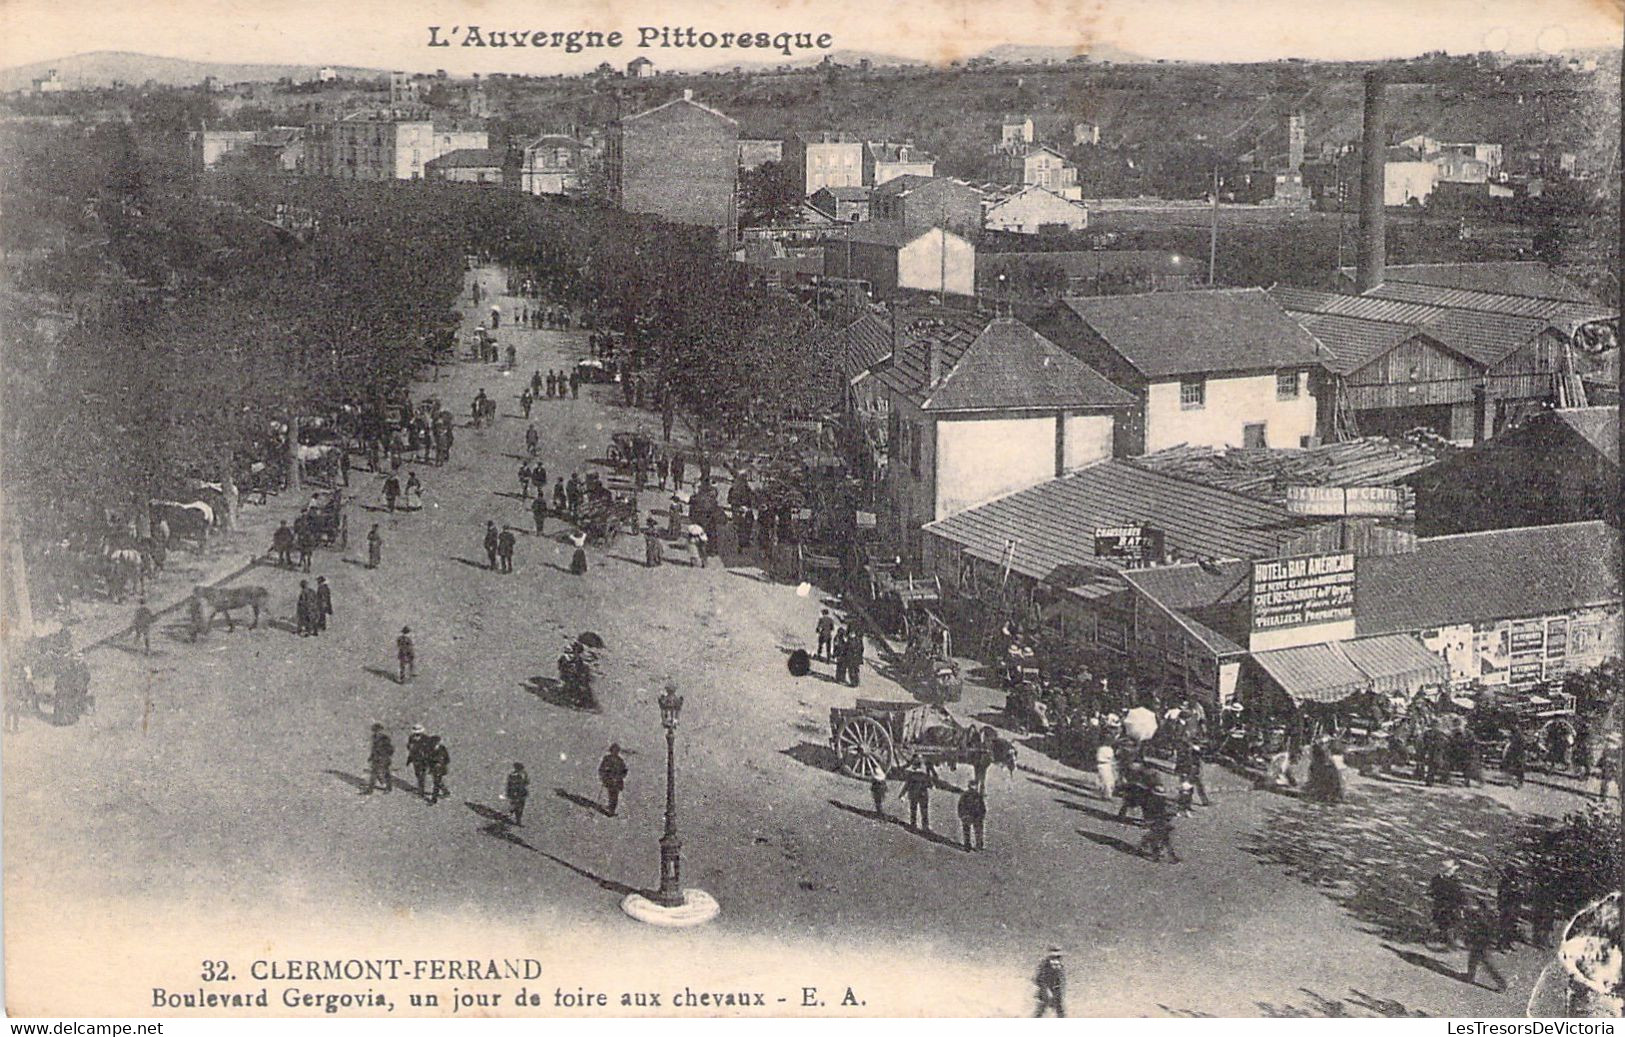 MARCHES - CLERMONT FERRAND - Boulevard Gergovia - Un Jour De Foire Aux Chevaux - Carte Postale Ancienne - Markets